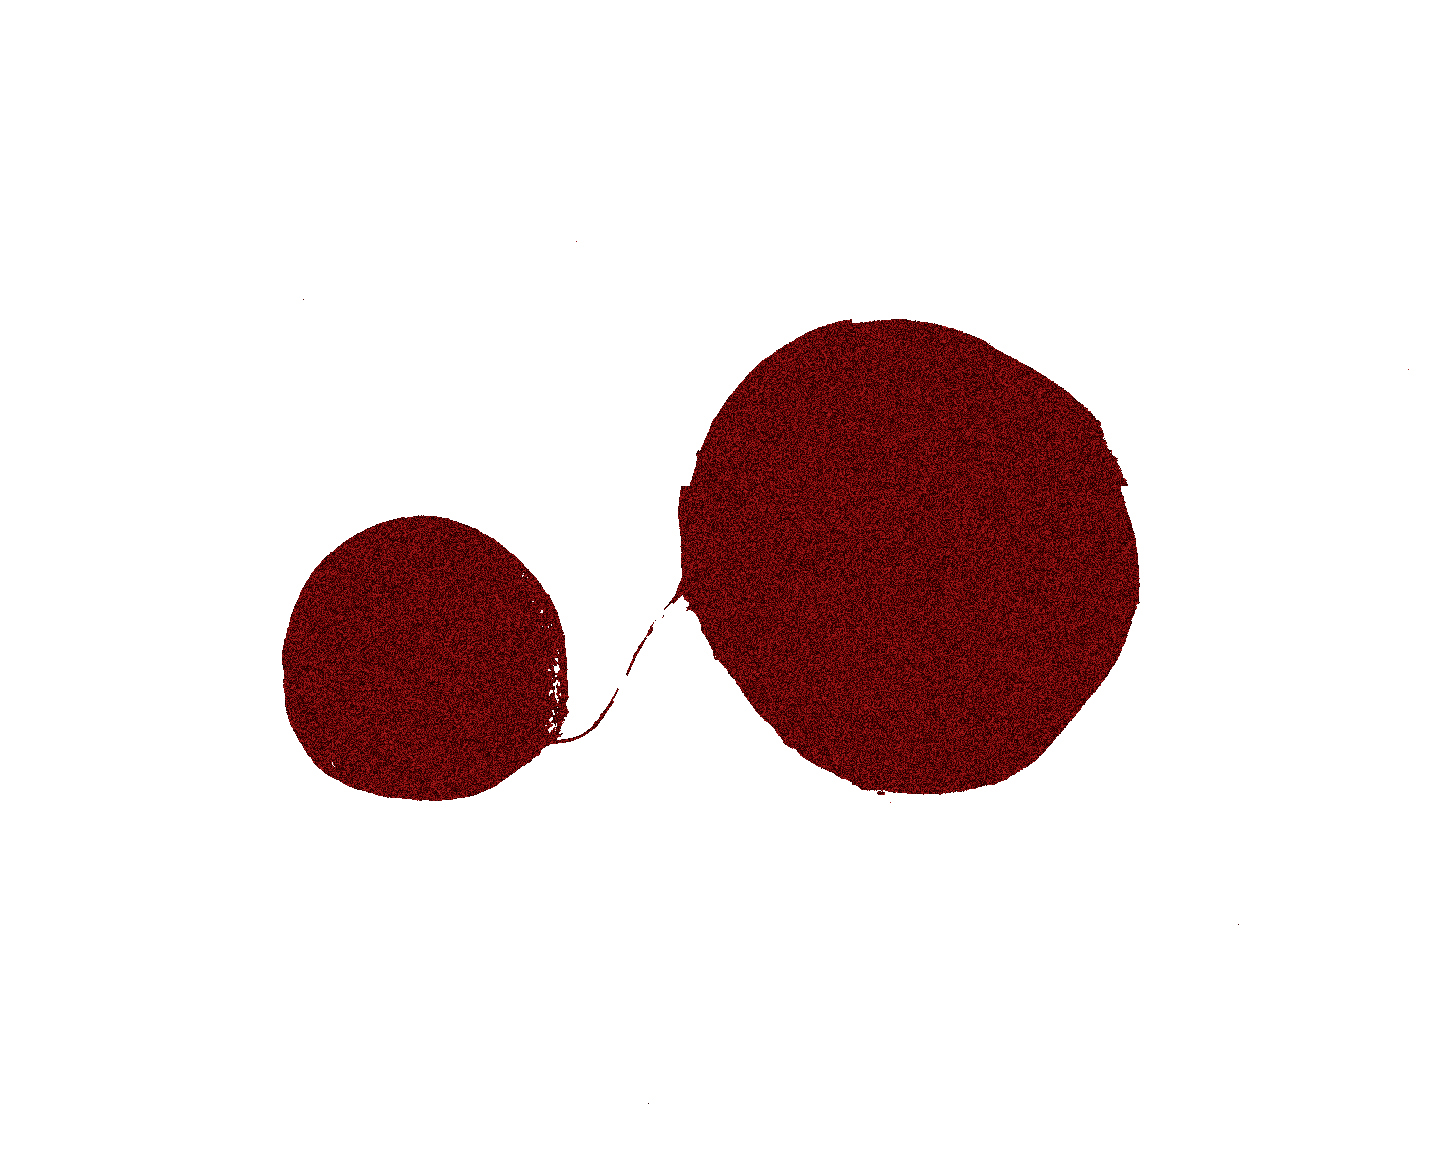 red circles